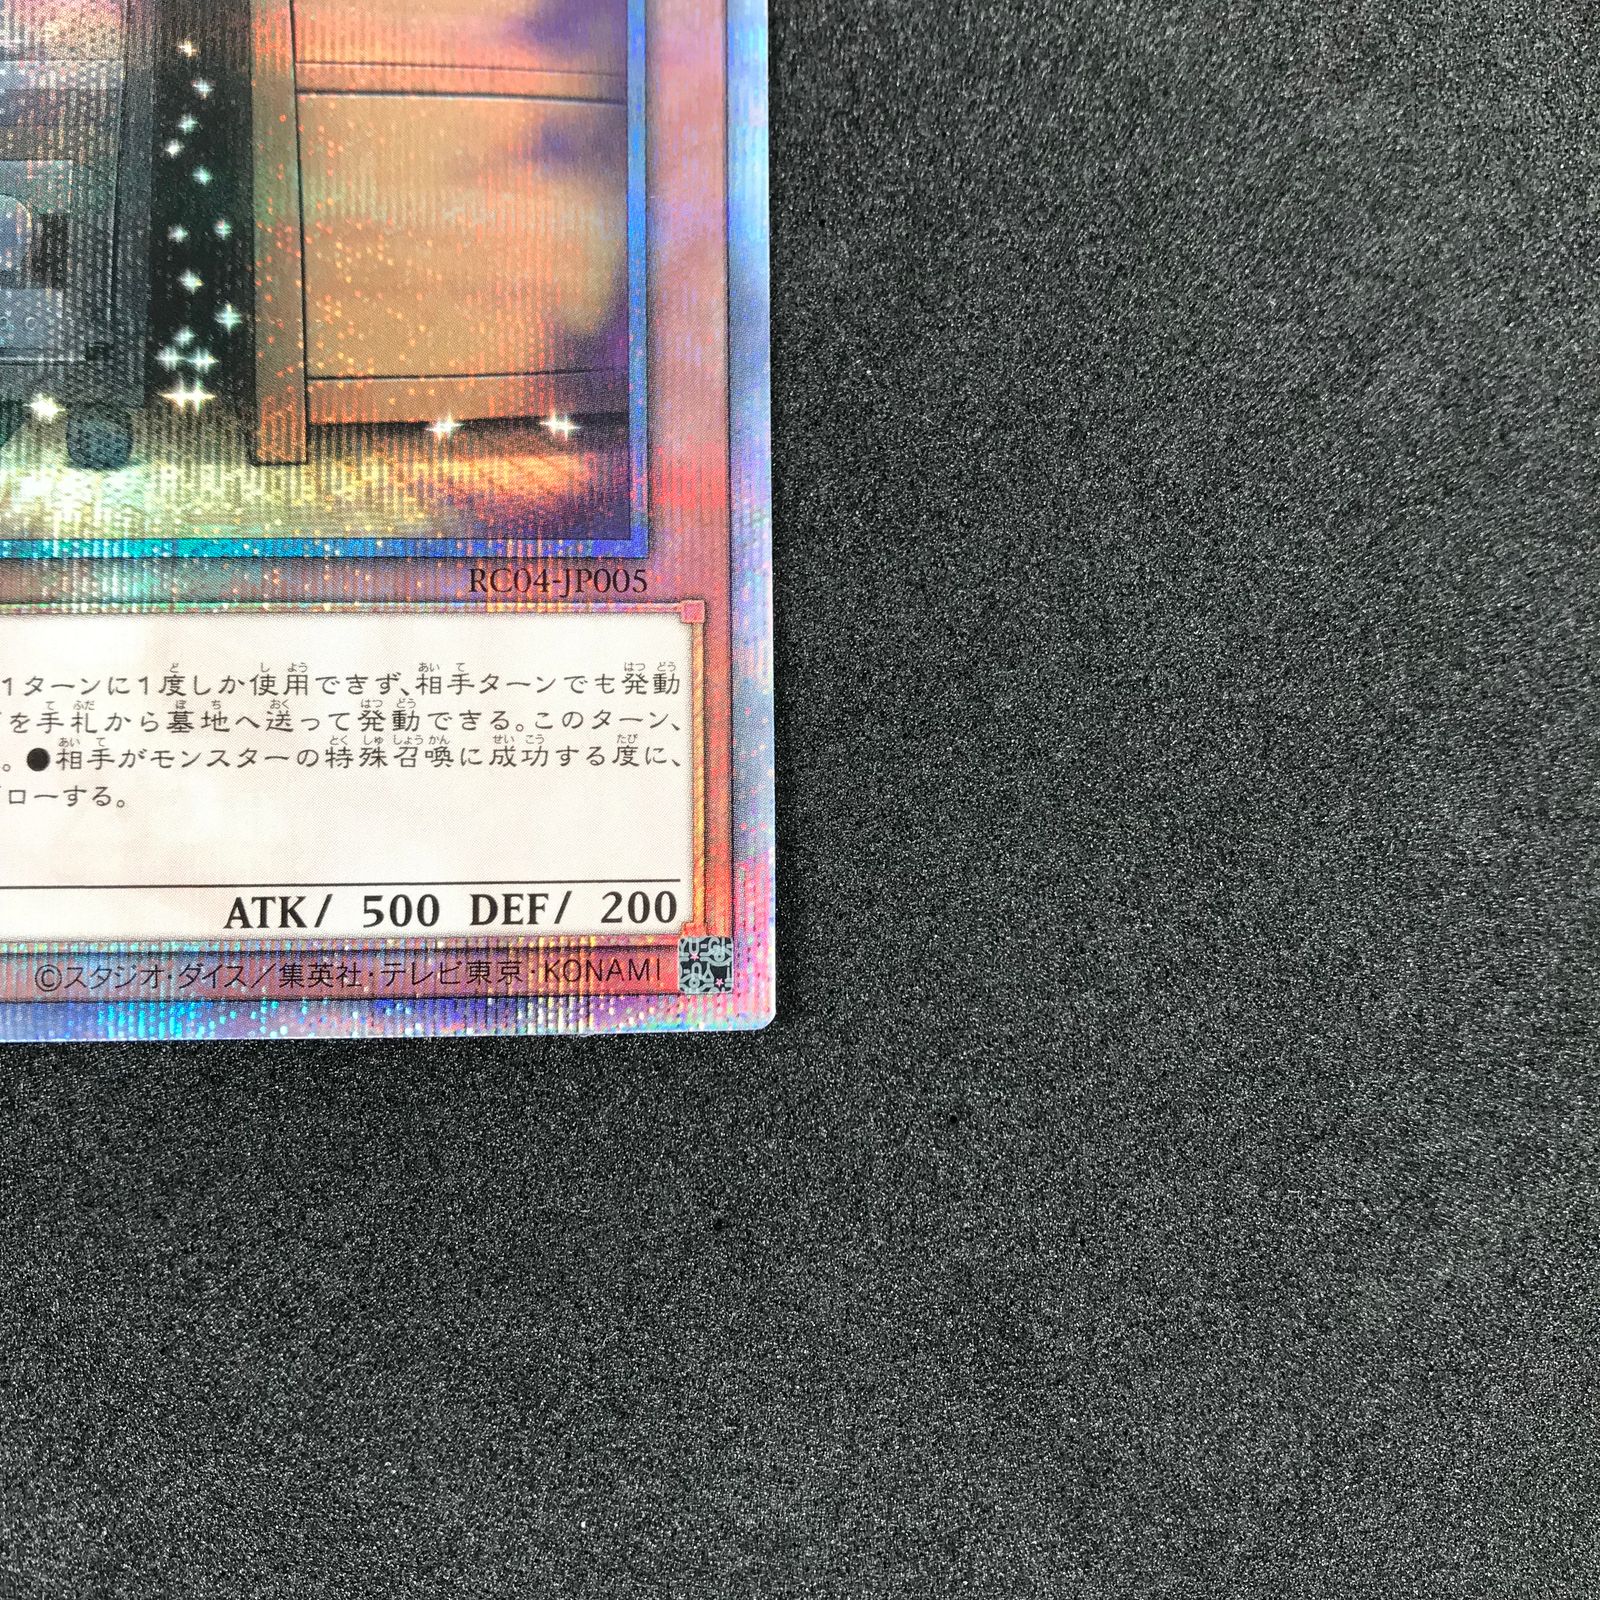 遊戯王カード RC04/JP005QSE 増殖するG 25thシークレットレア 